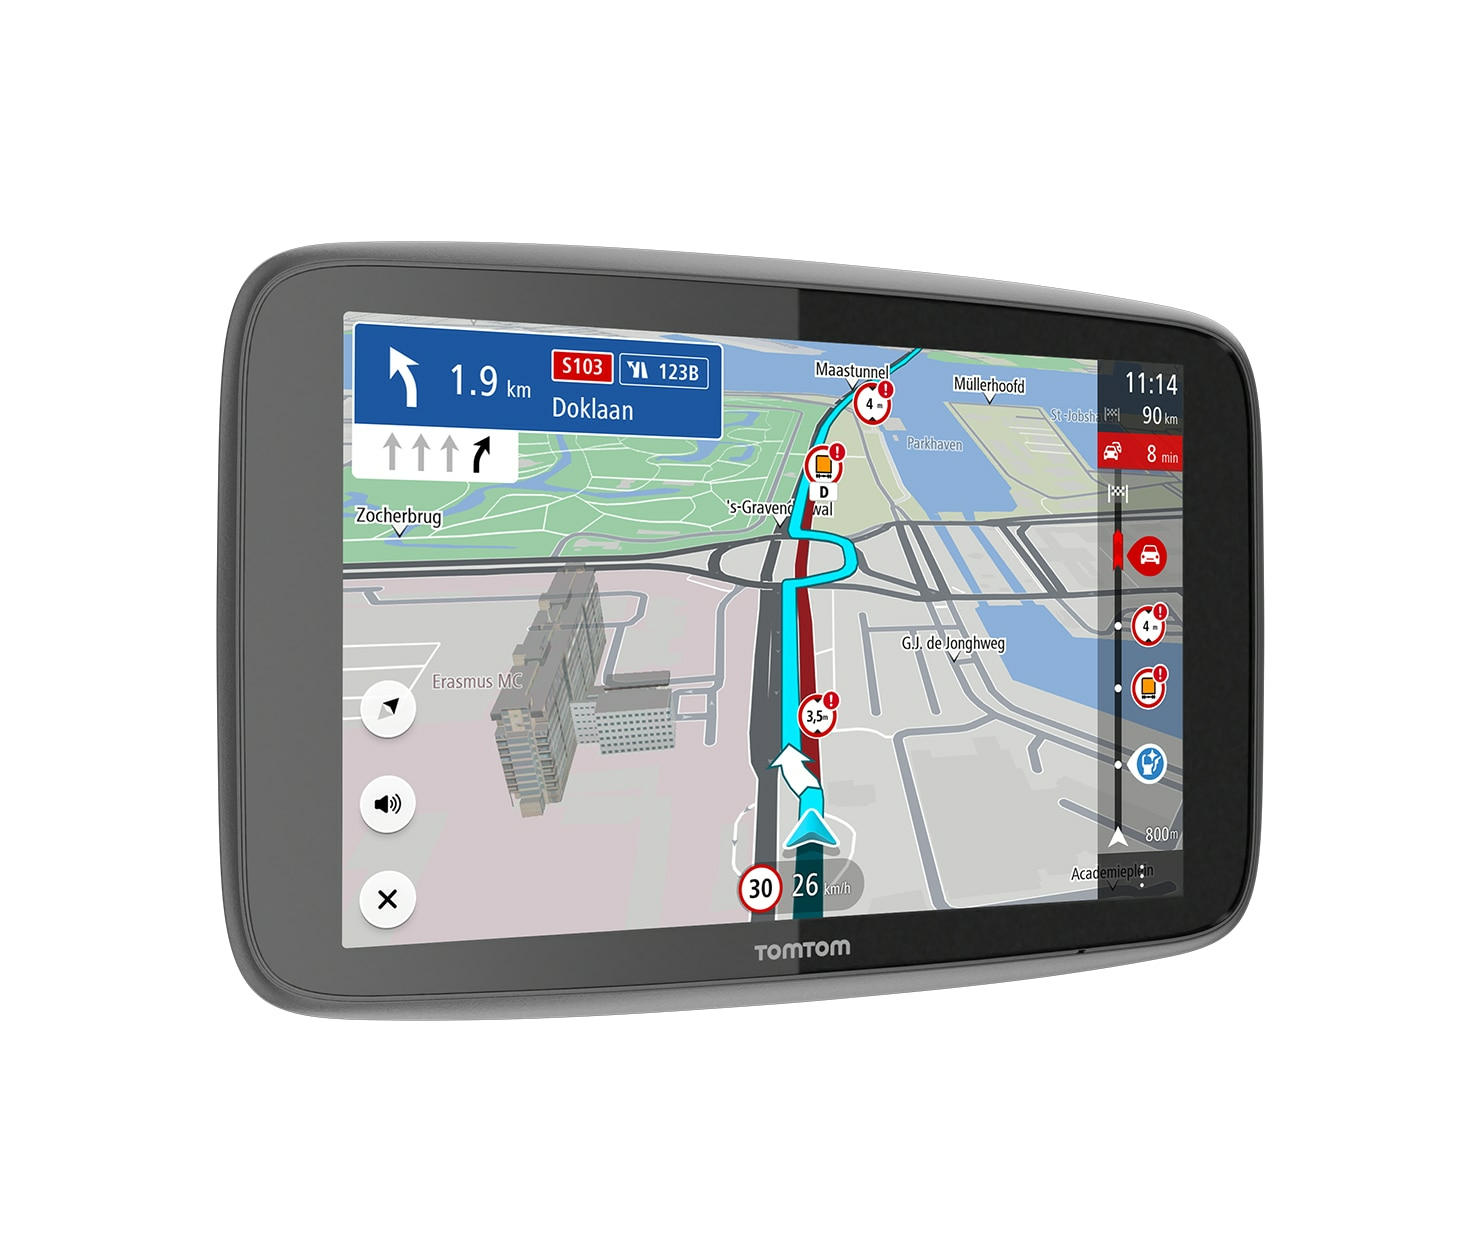 TomTom GO Expert - GPS-Navigationsgerät - Kfz